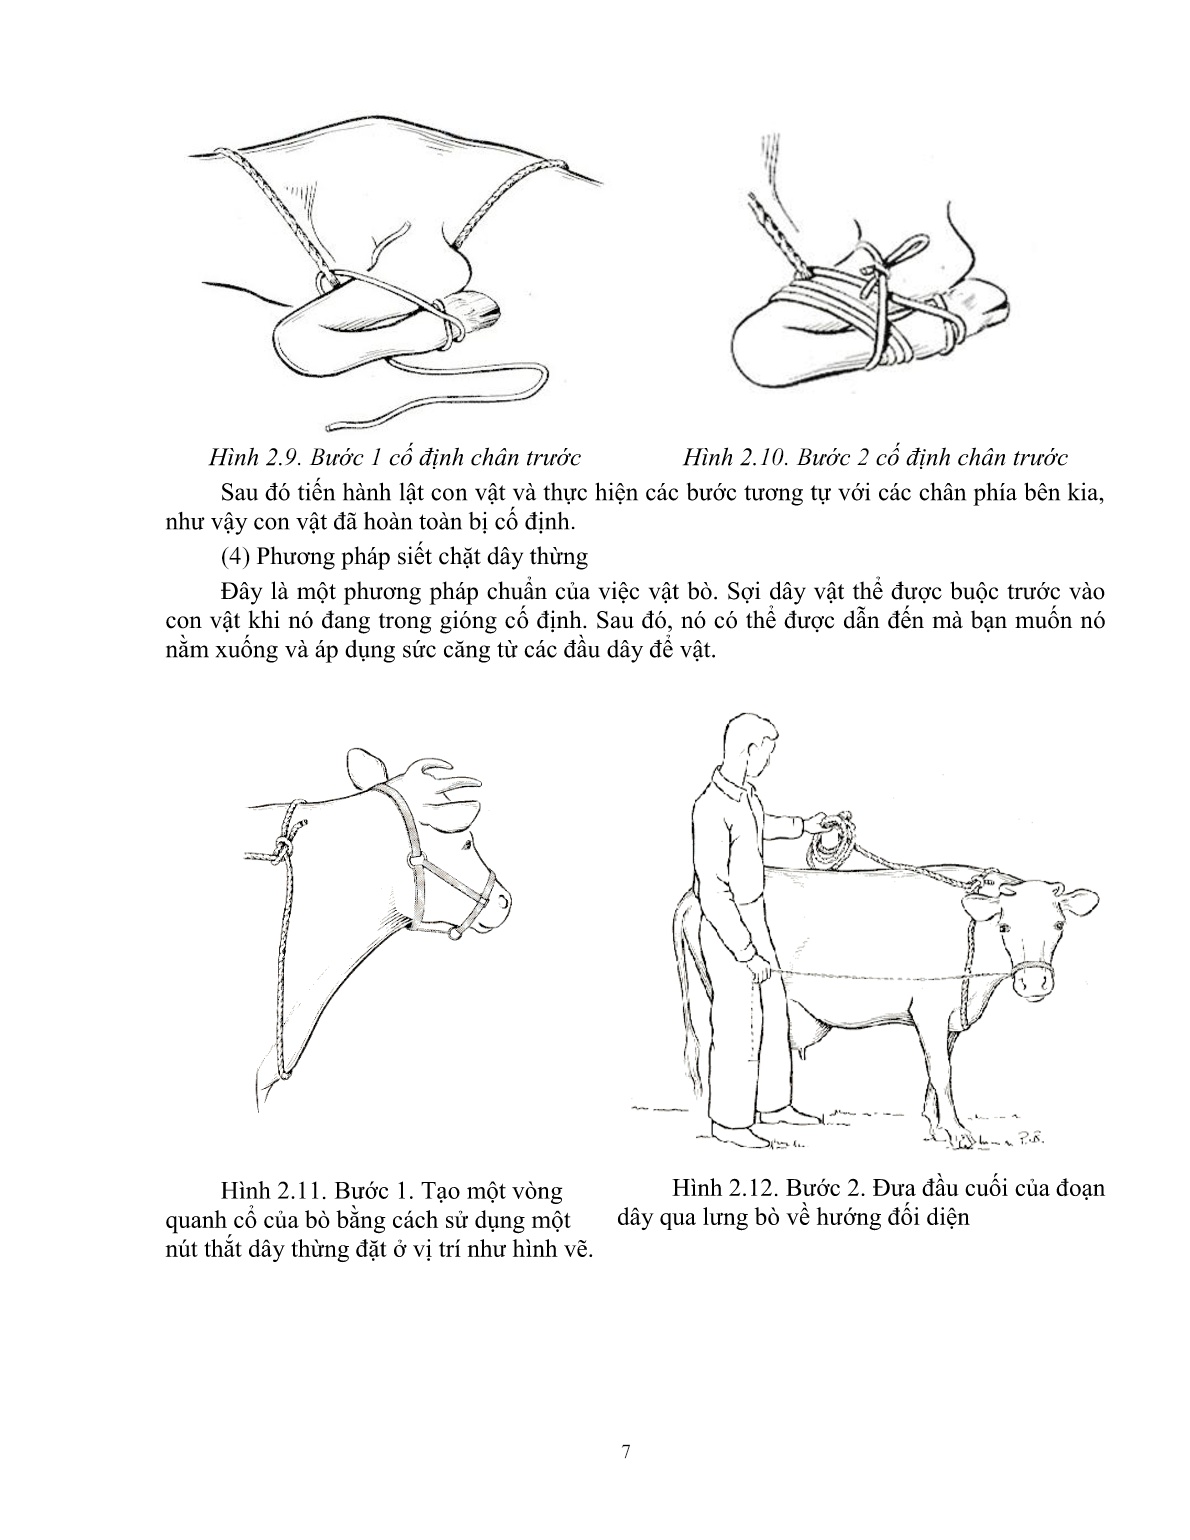 Giáo trình Kỹ thuật thực hành chăn nuôi – thú y áp dụng cho trâu, bò (Trình độ: Đào tạo dưới 3 tháng) trang 8